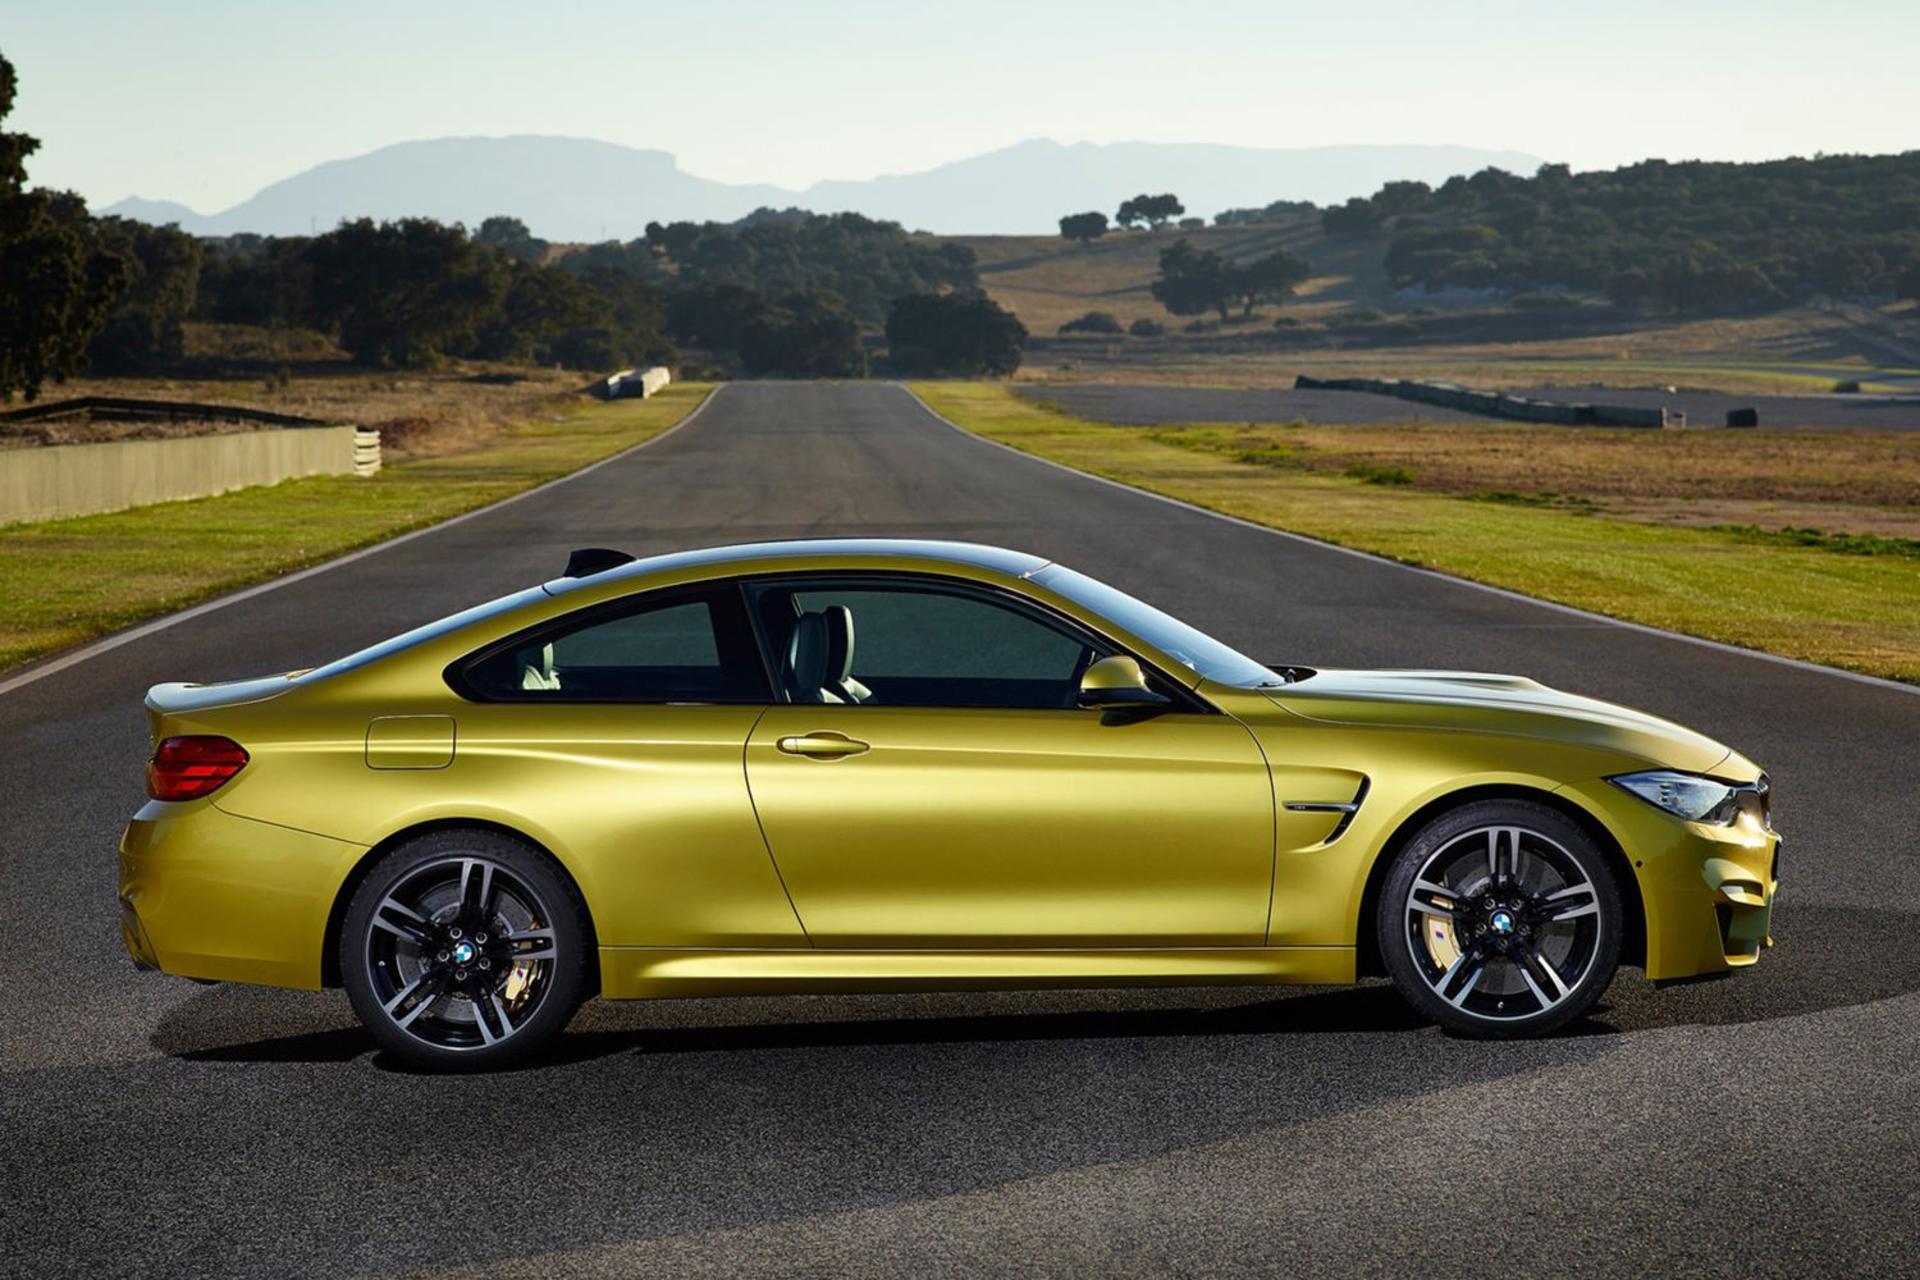 مرجع متخصصين ايران BMW M4 2015